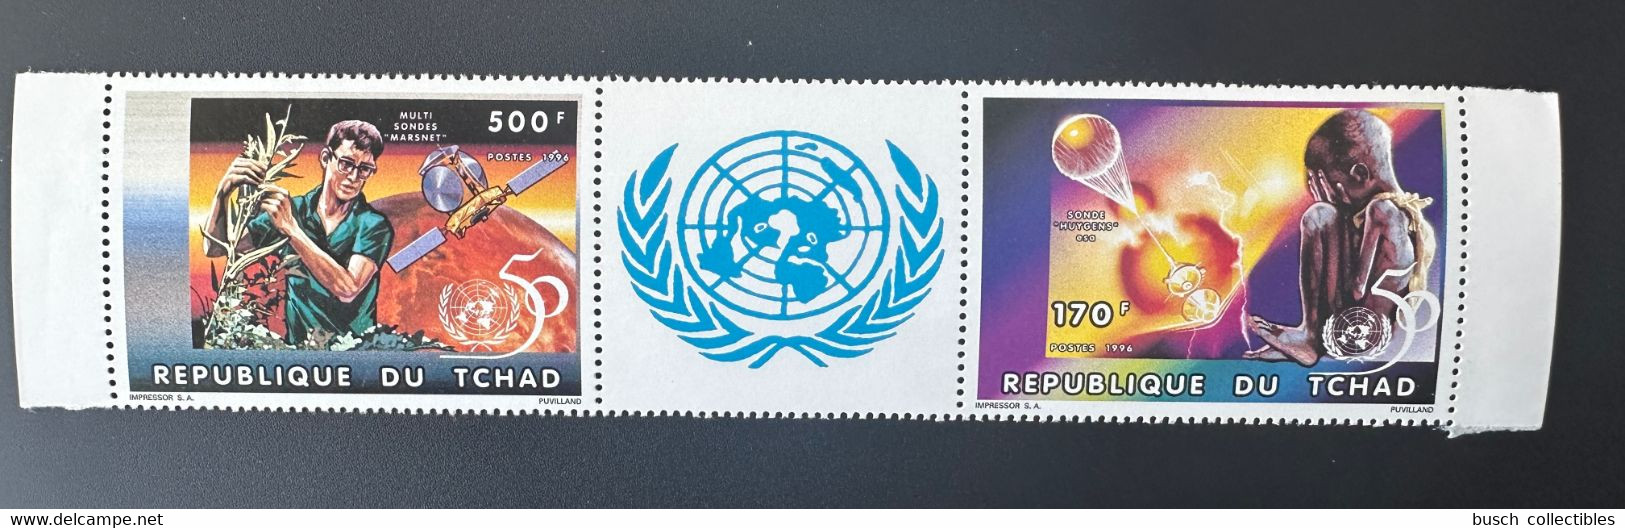 Tchad Chad Tschad 1996 Mi. 1357a - 1358a A United Nations Unies Vereinte Nationen UNO ONU UN 50 Ans Jahre Years - UNO